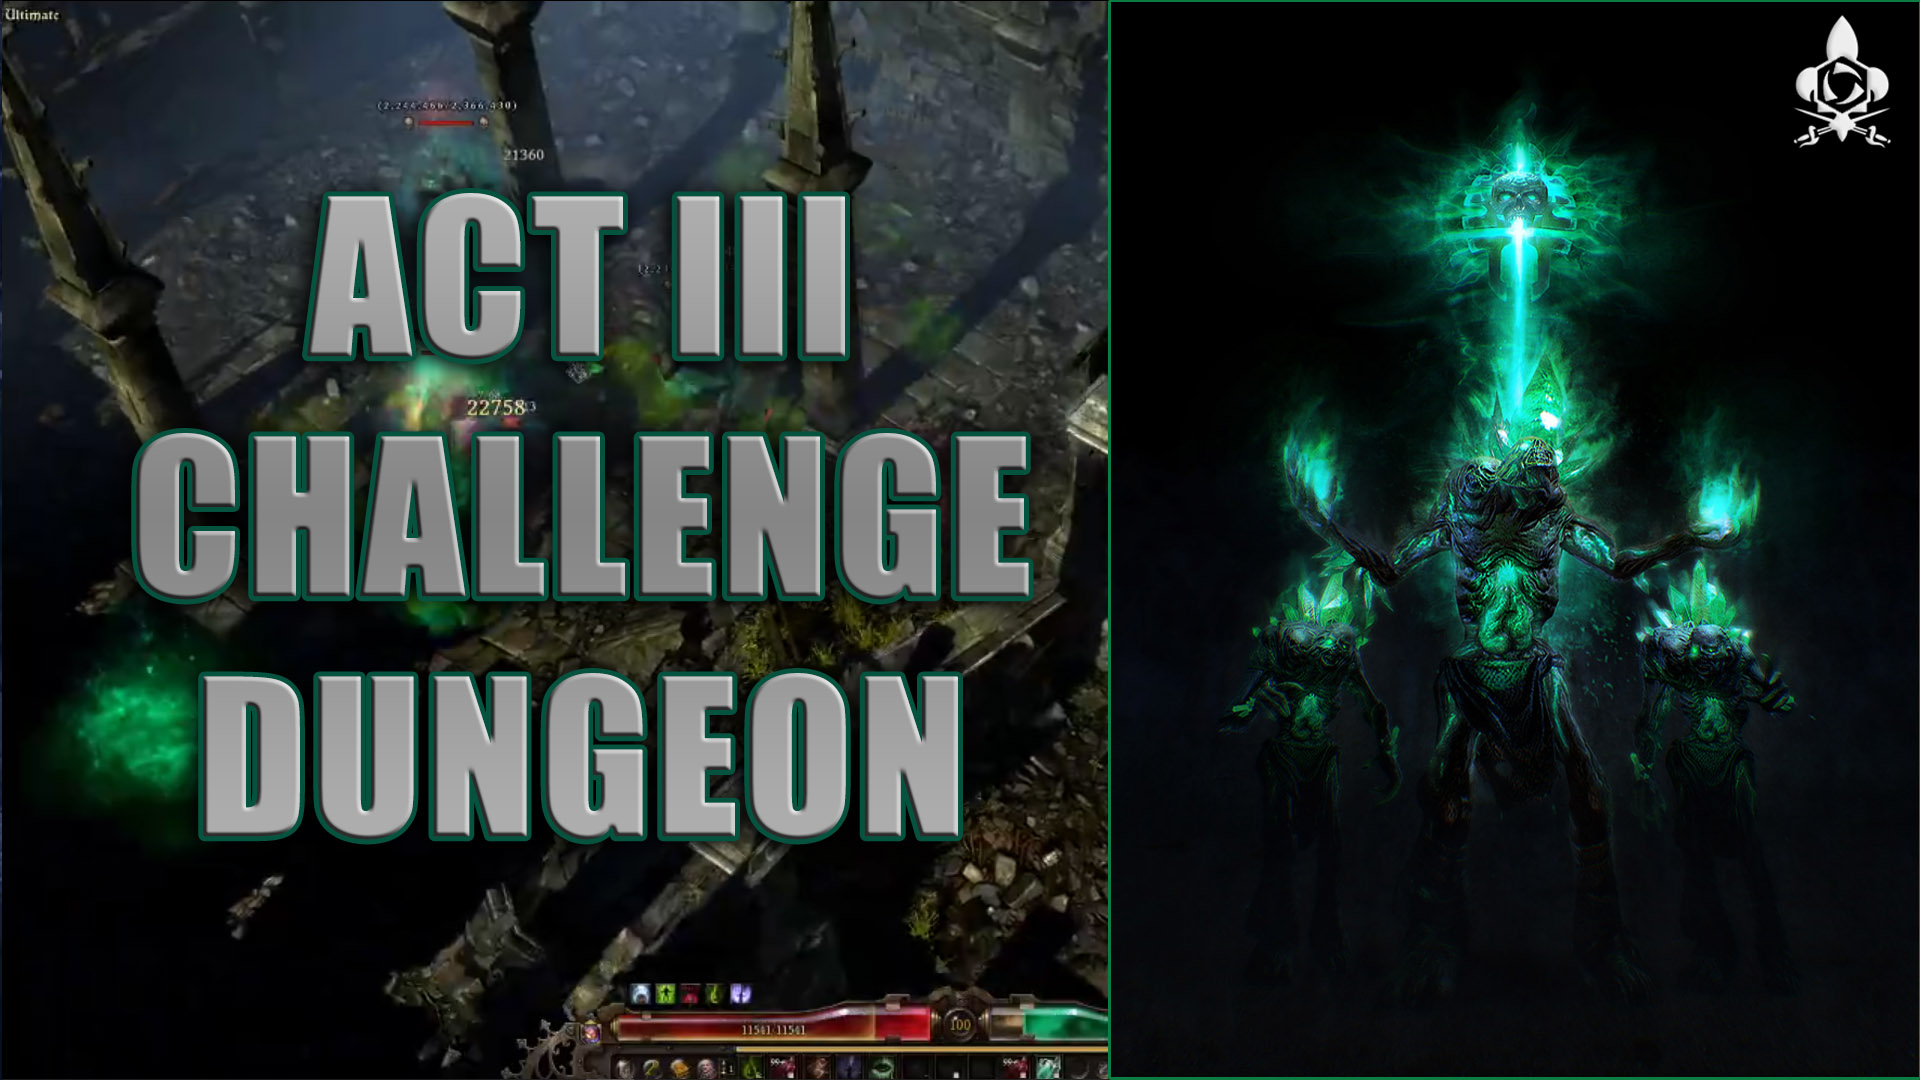 act III dungeon challenge